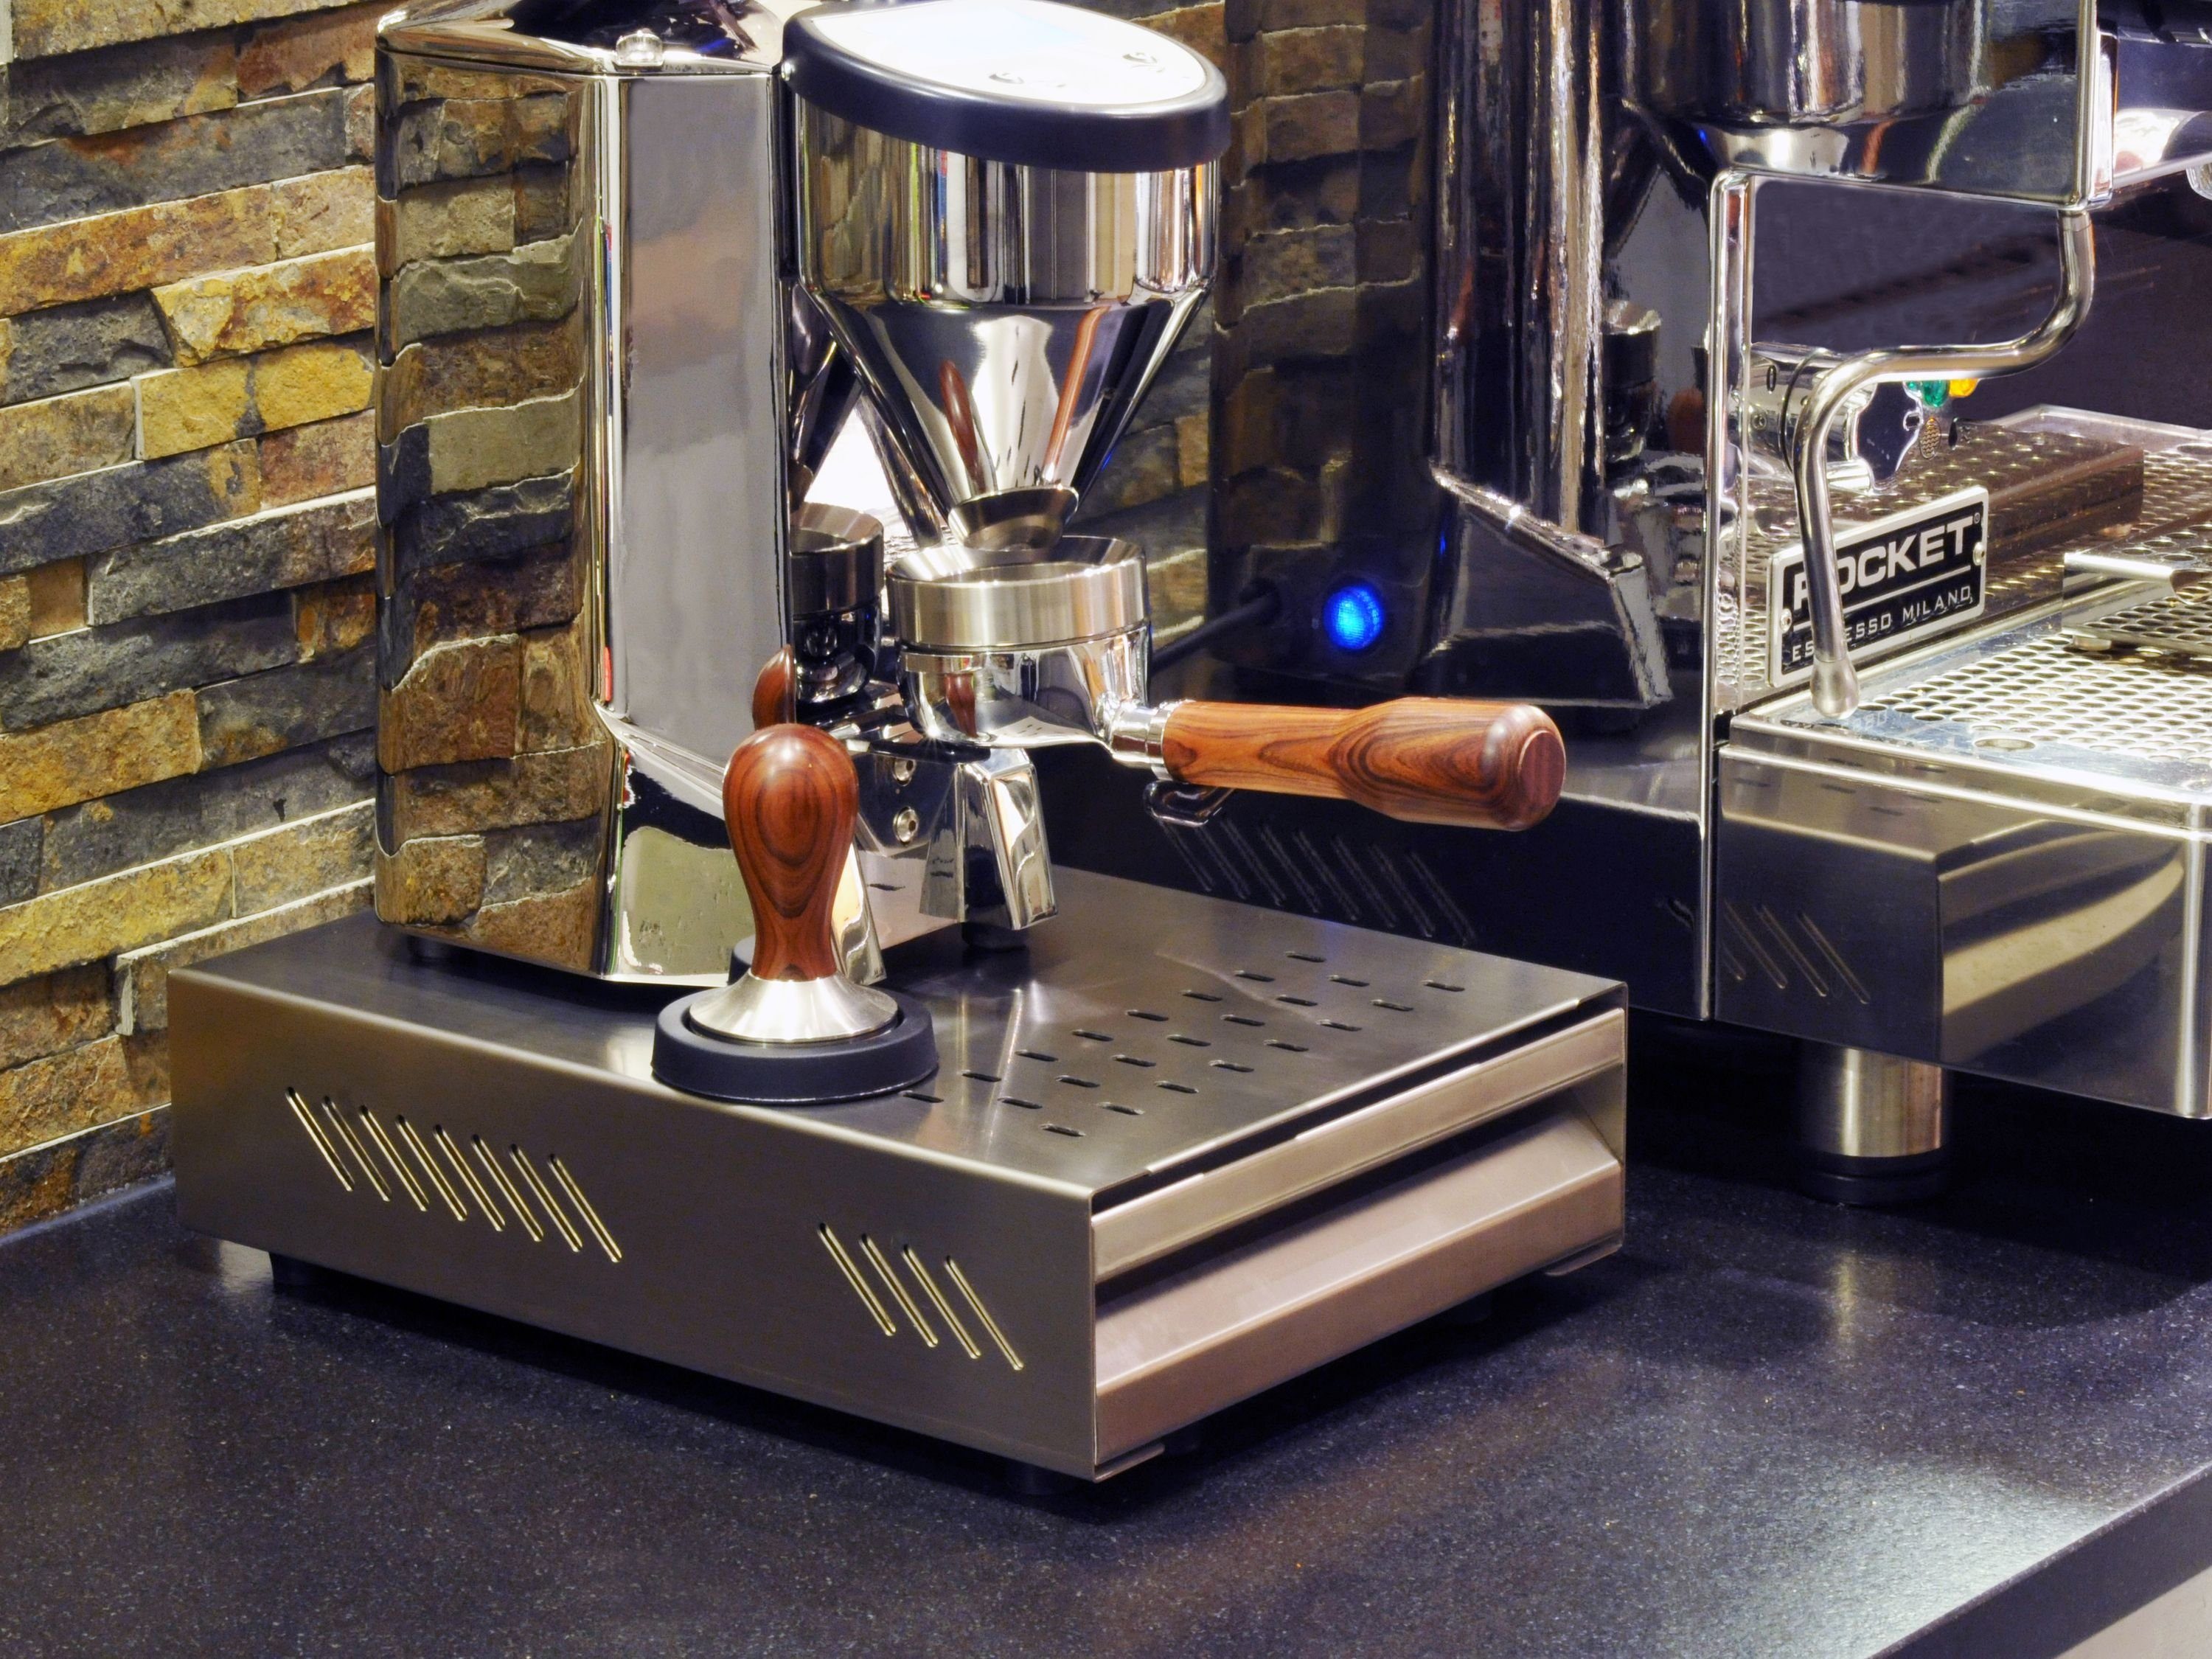 Kaffeesatz, x 350 mm gummierter Stahl, »Professionale« x für Siebträger, Abklopfstab, scarlet Ausklopfbehälter, von aus Abklopfbehälter scarlet 80 250 für Edelstahl/pulverbeschichtetem Sudschublade espresso espresso